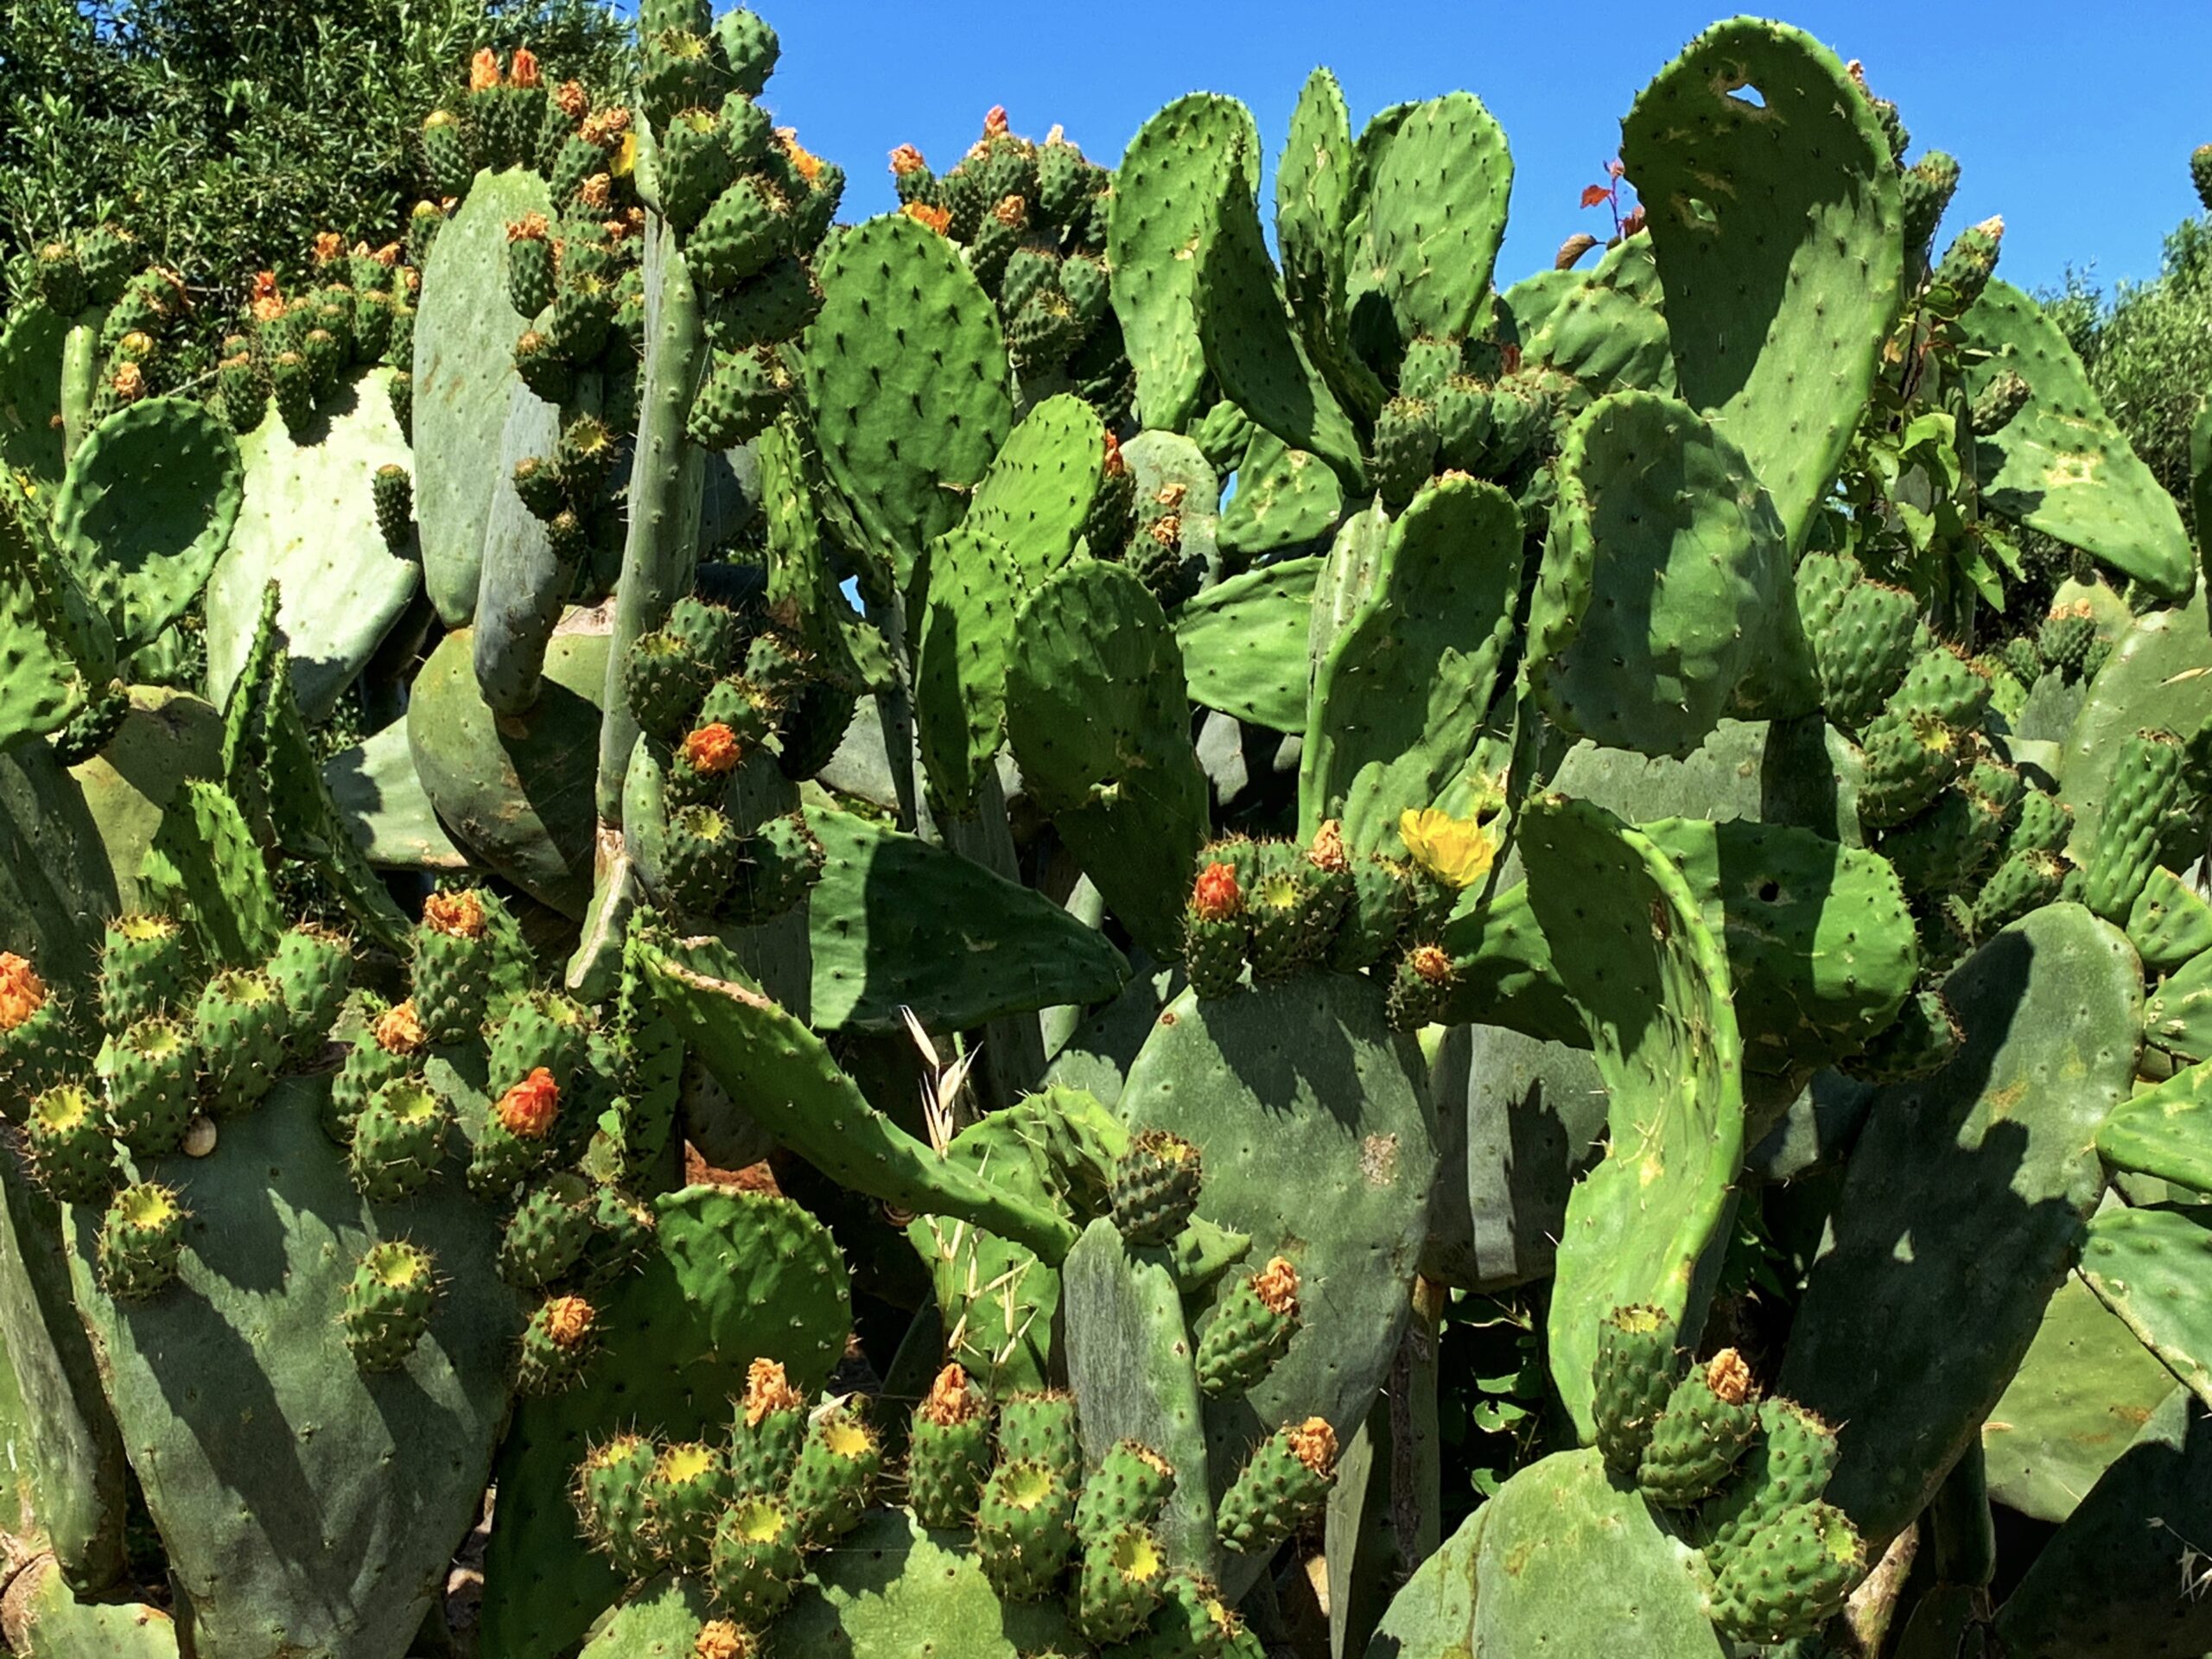 Puglia’s famous cactus